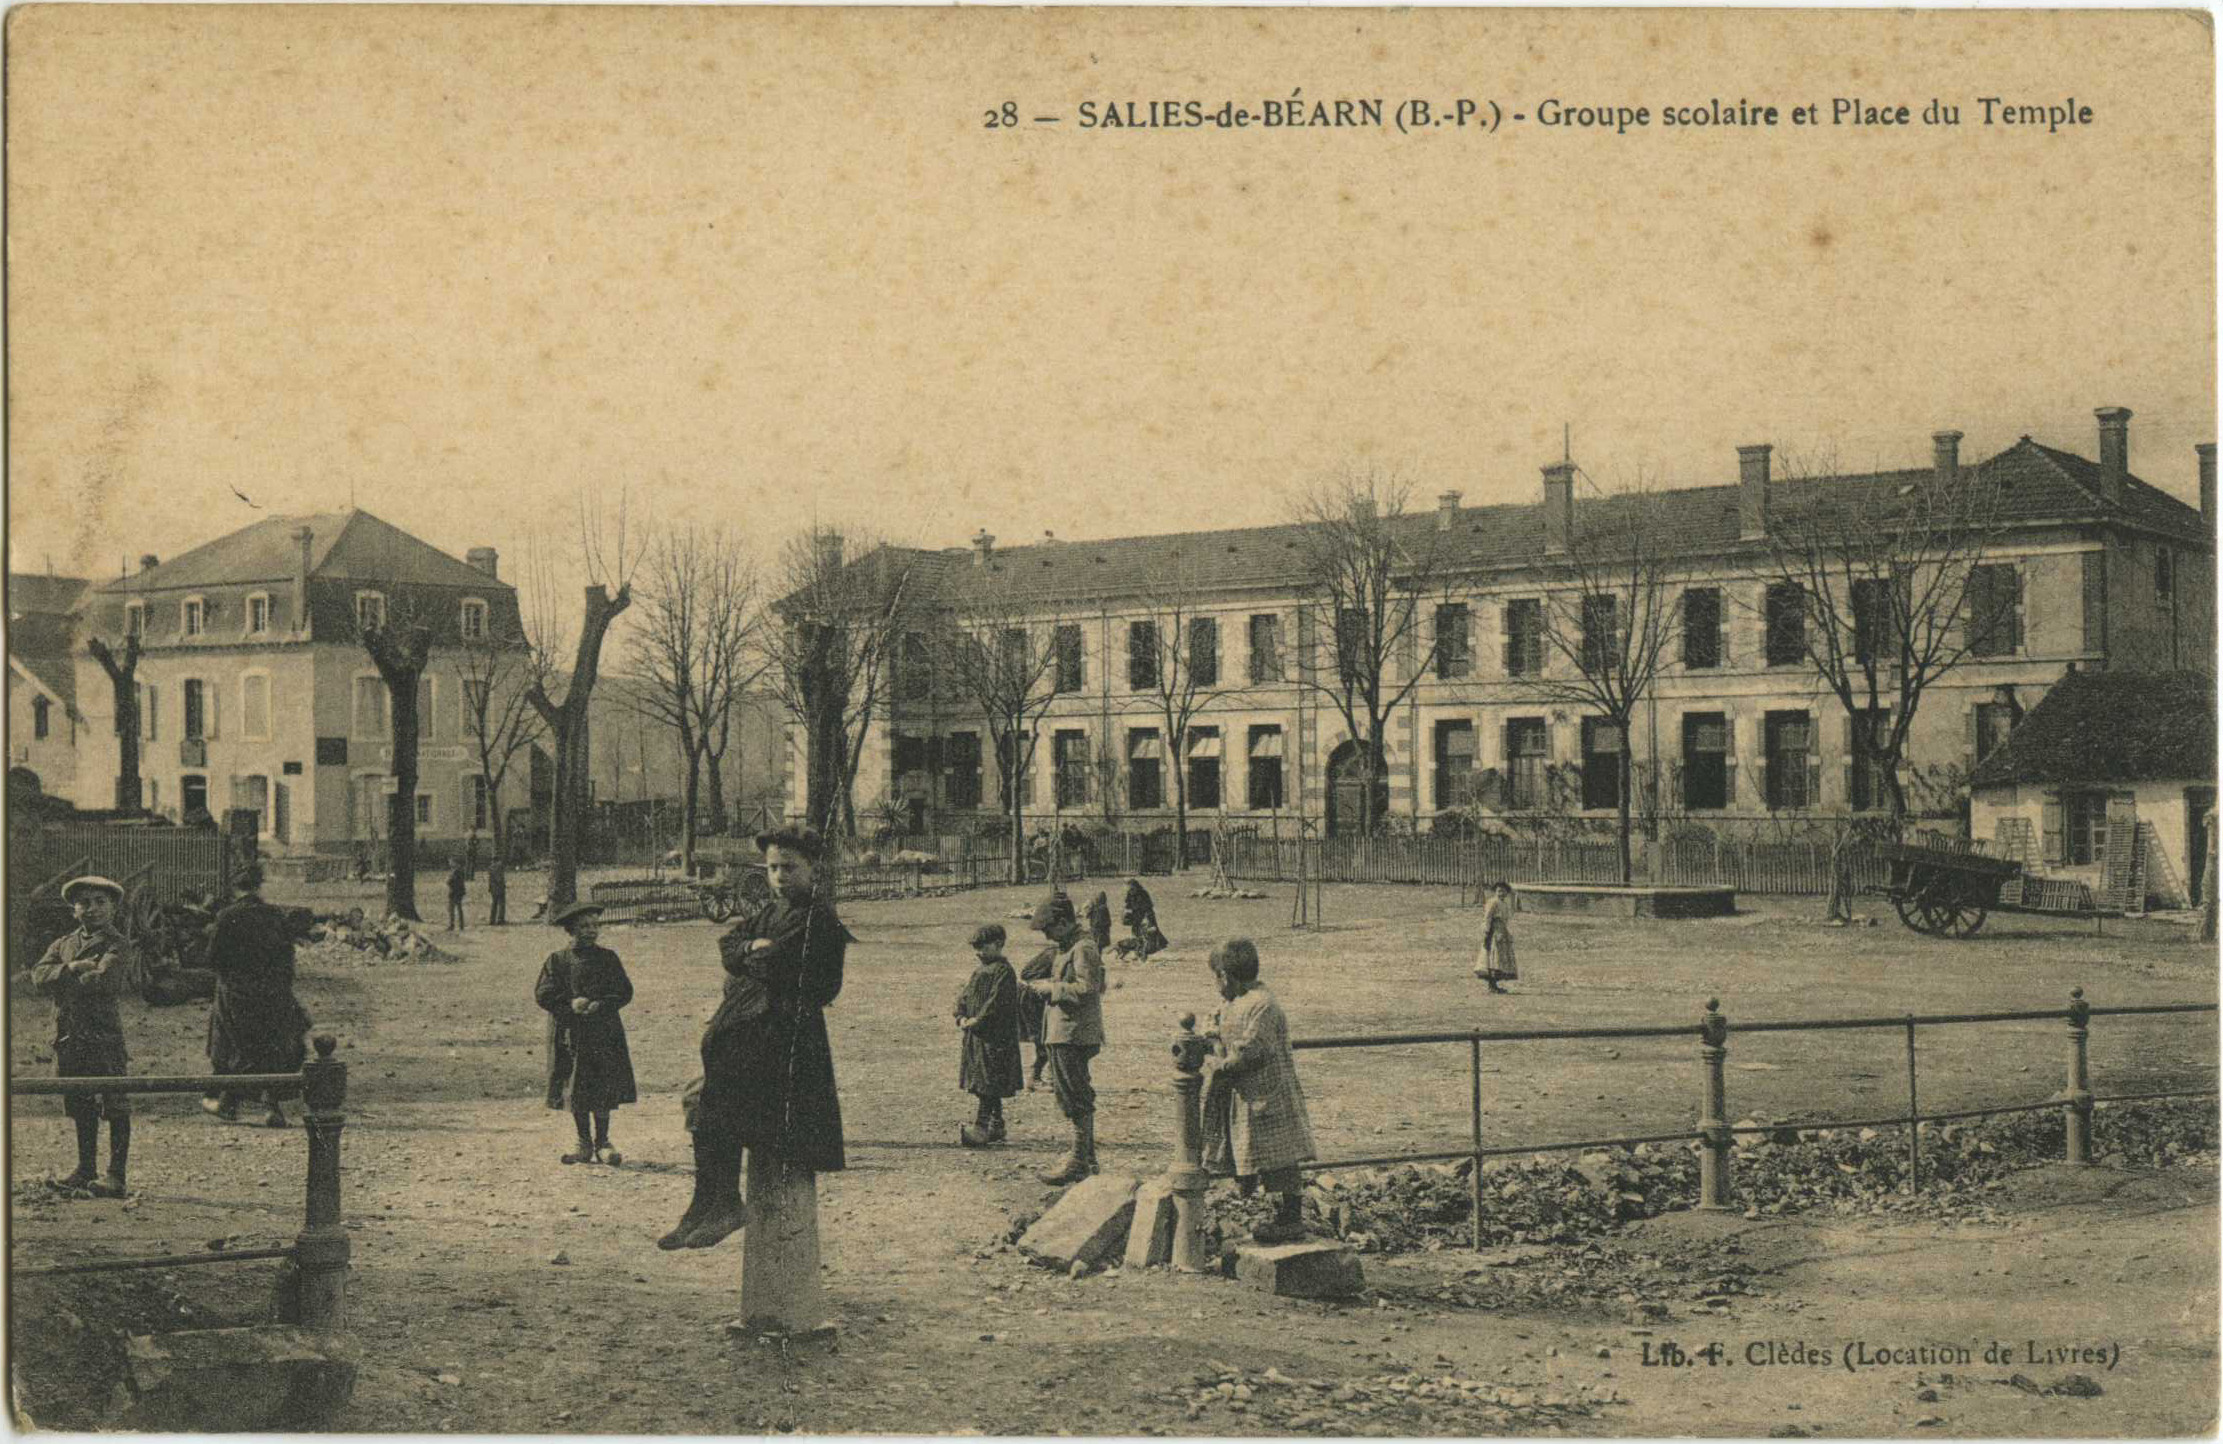 Salies-de-Béarn - Groupe scolaire et Place du Temple